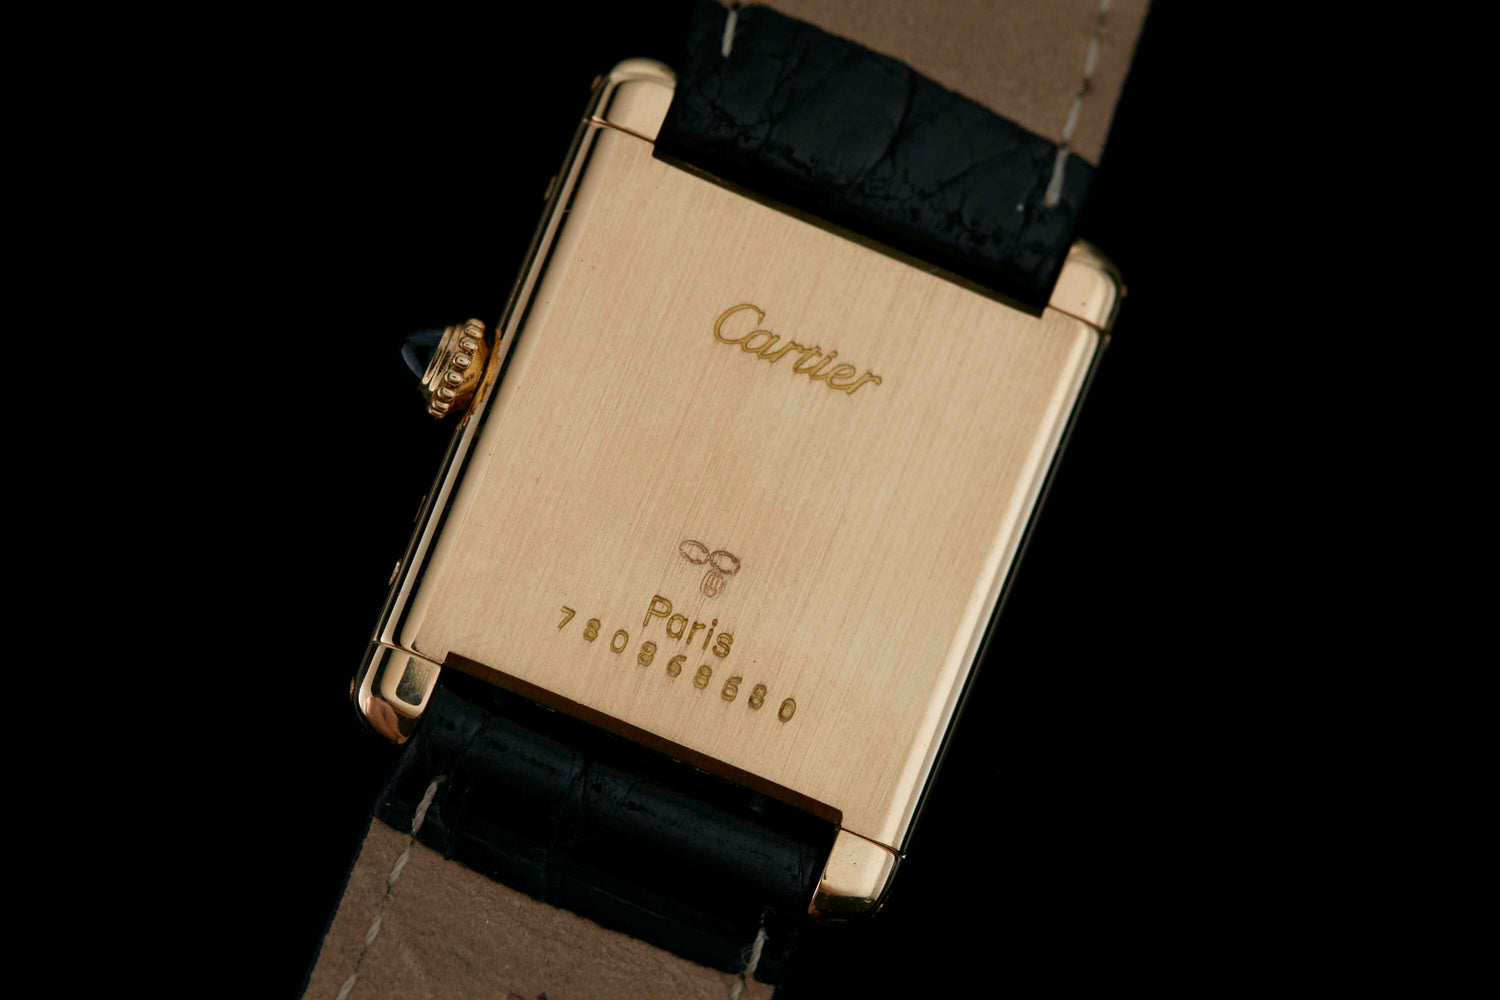 Cartier Tank Louis Cartier Watch 390050